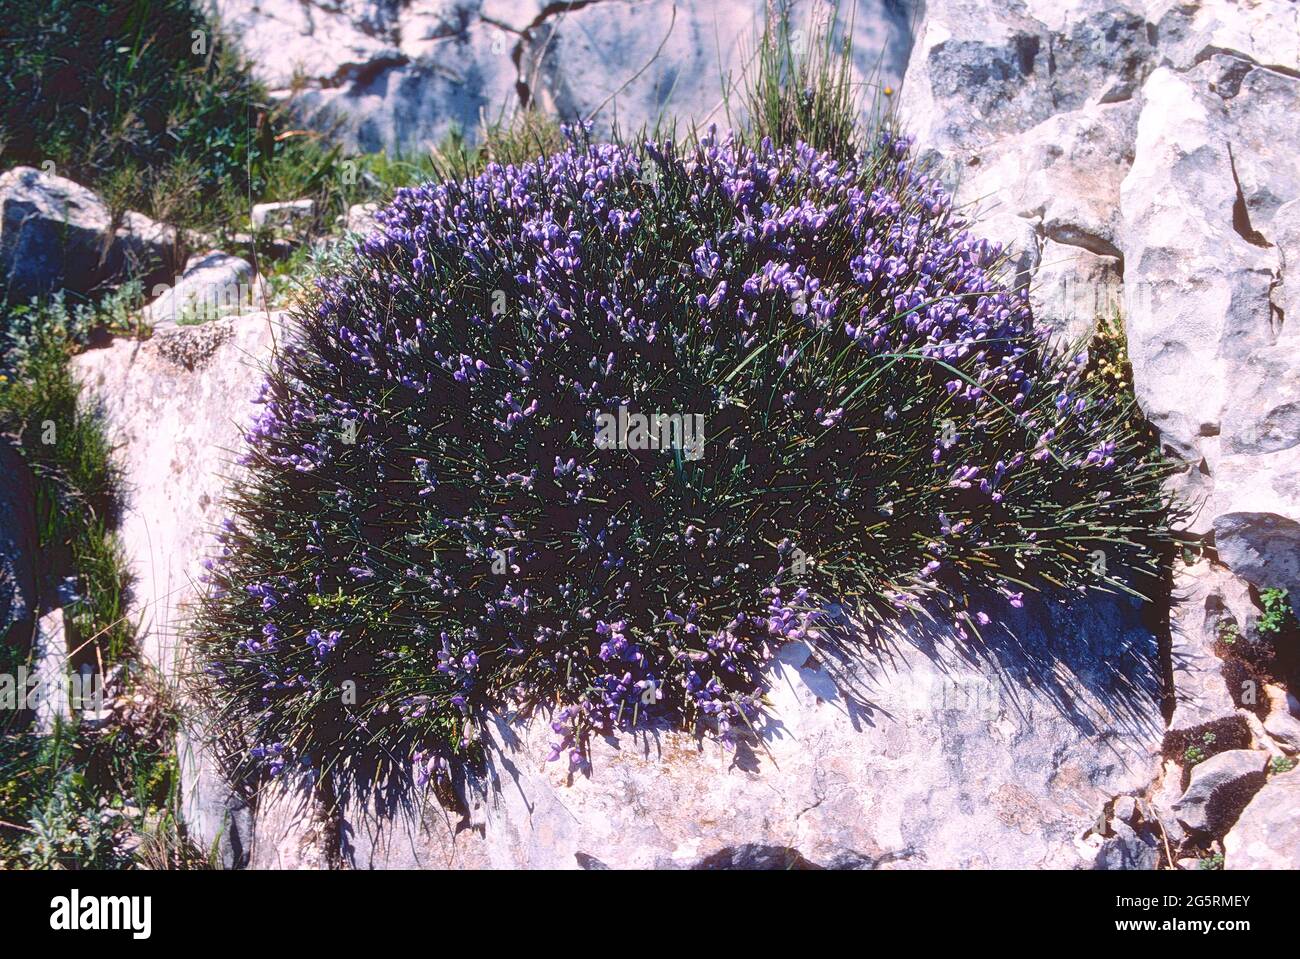 Igelginster, Erinacea anthyllis, Fabaceae, blühend, in Felsen, Pyrenäen, bei Jaca, Provinz Huelva, Spanien Stock Photo